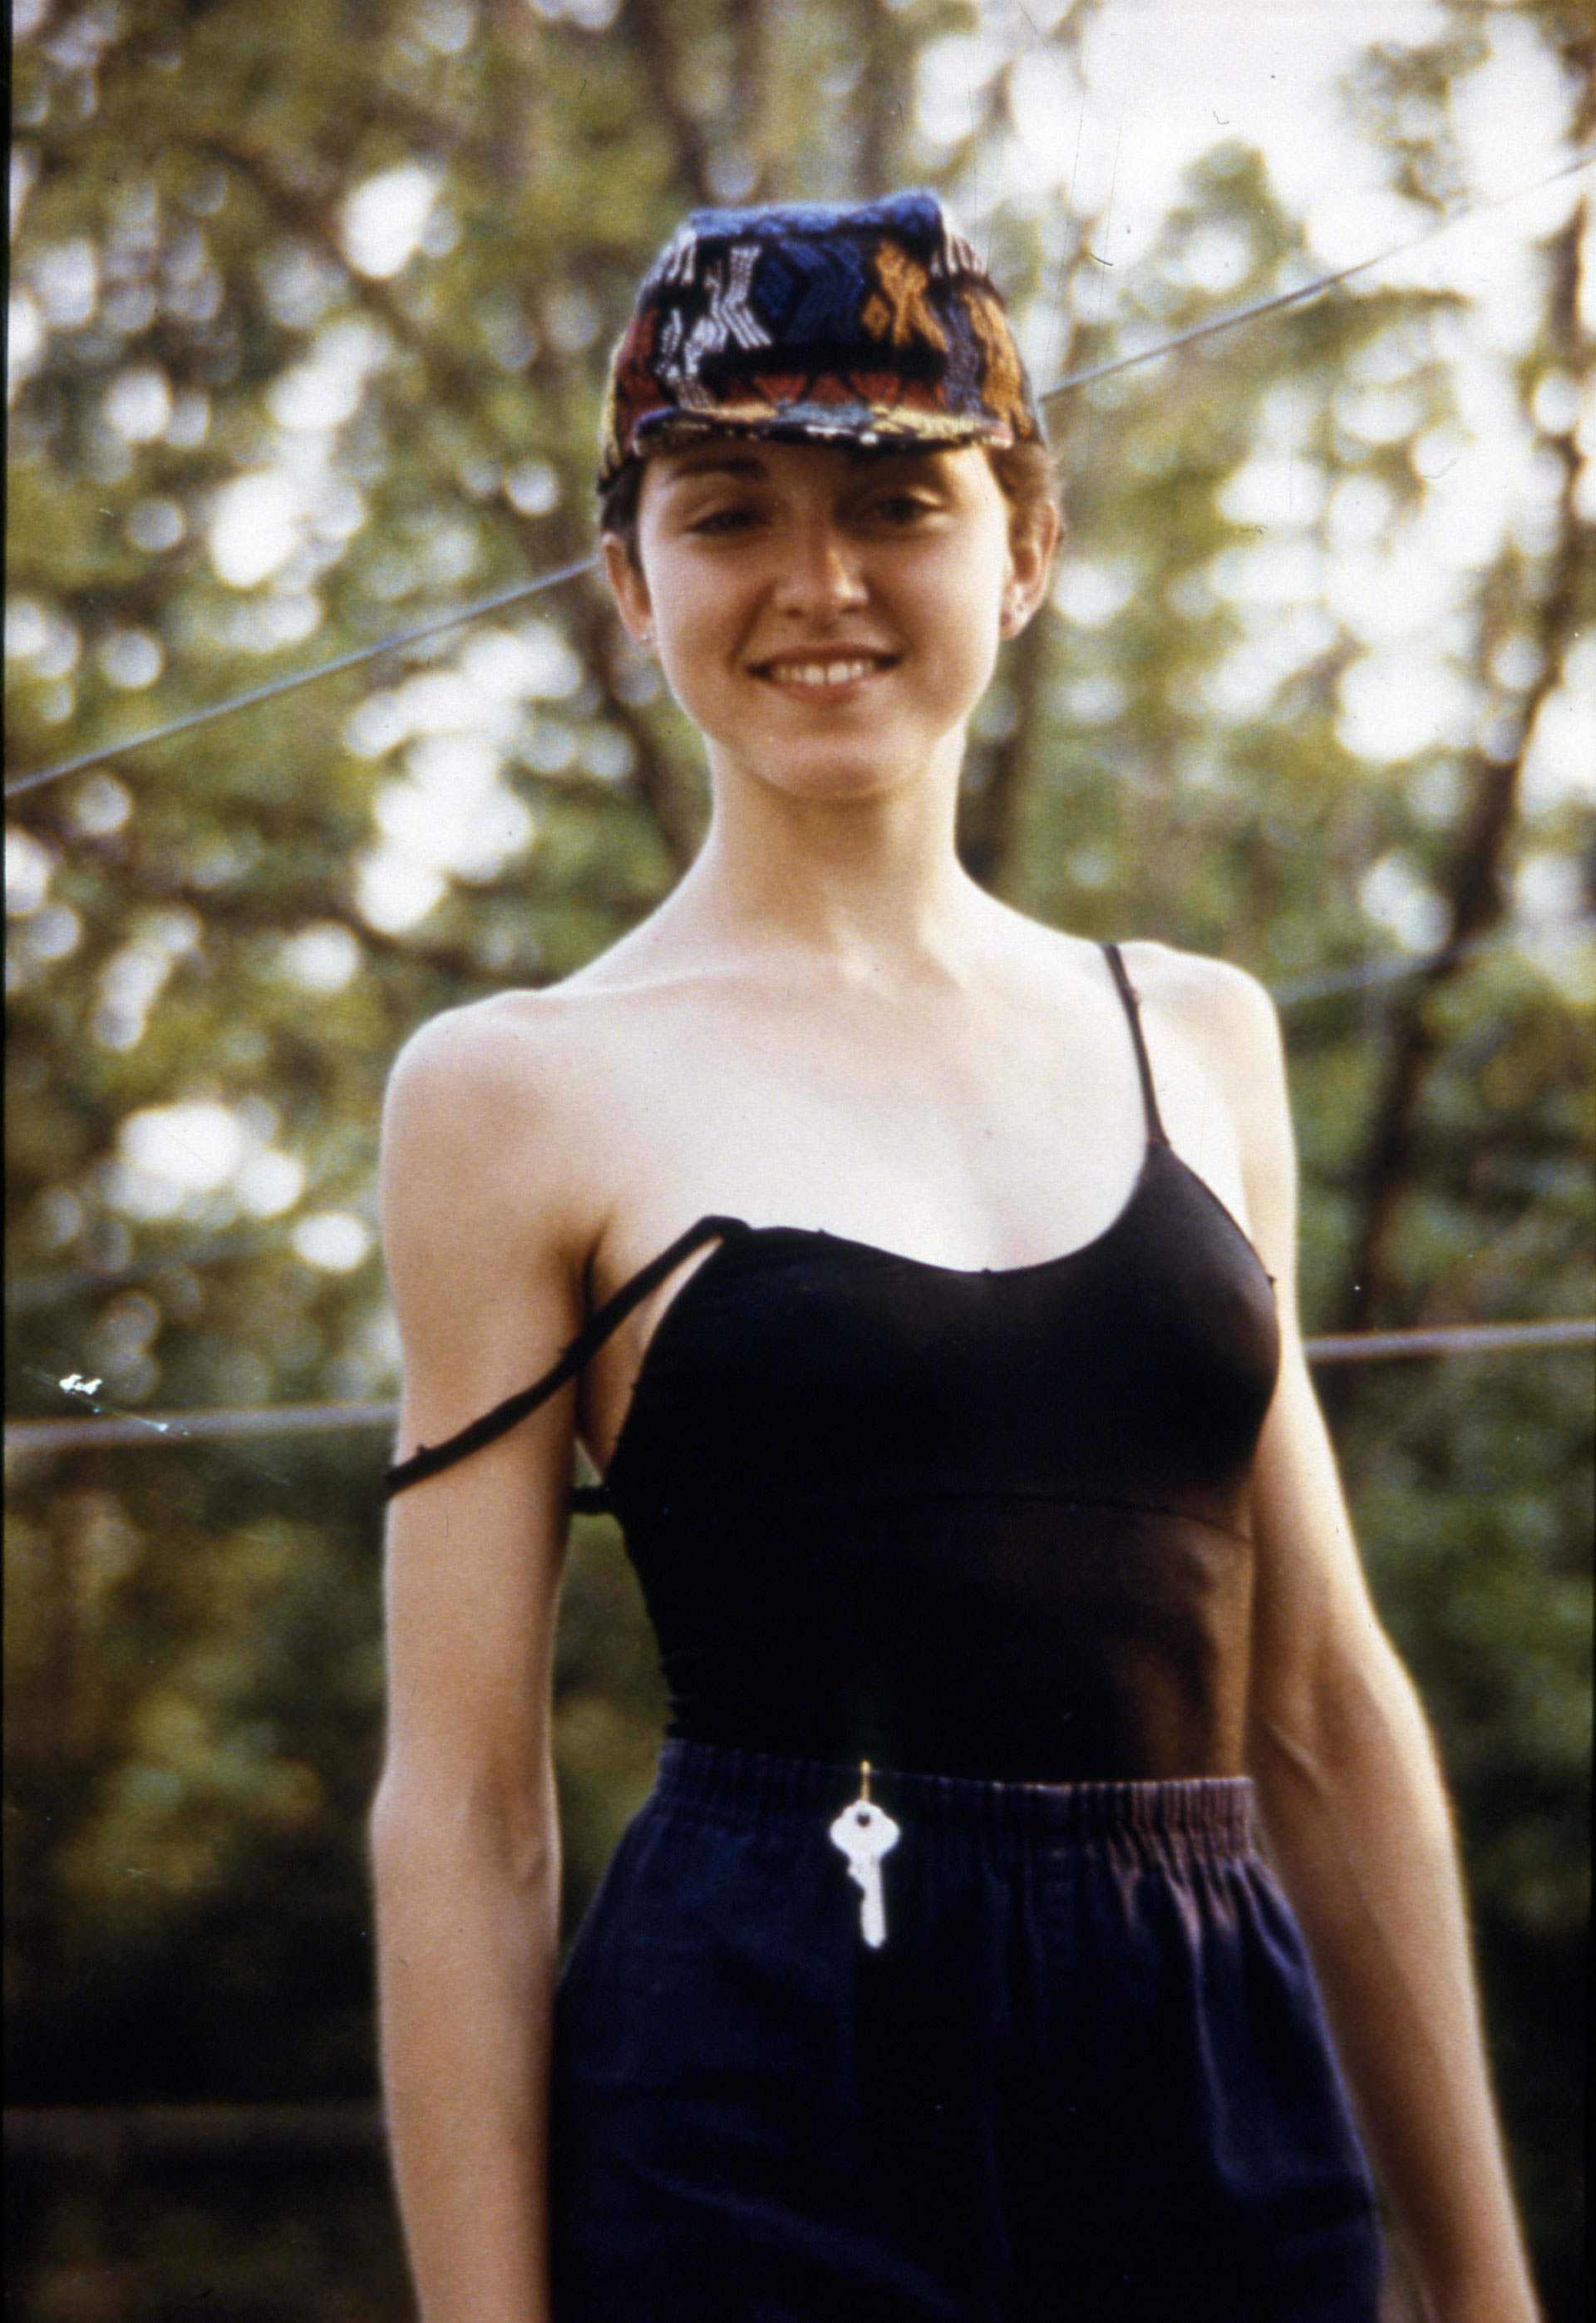 1. Madonna Louise Veronica Ciccone nació el 16 de agosto de 1958. Esta foto es de 1976, cuando estudiaba danza en la universidad de Michigan.